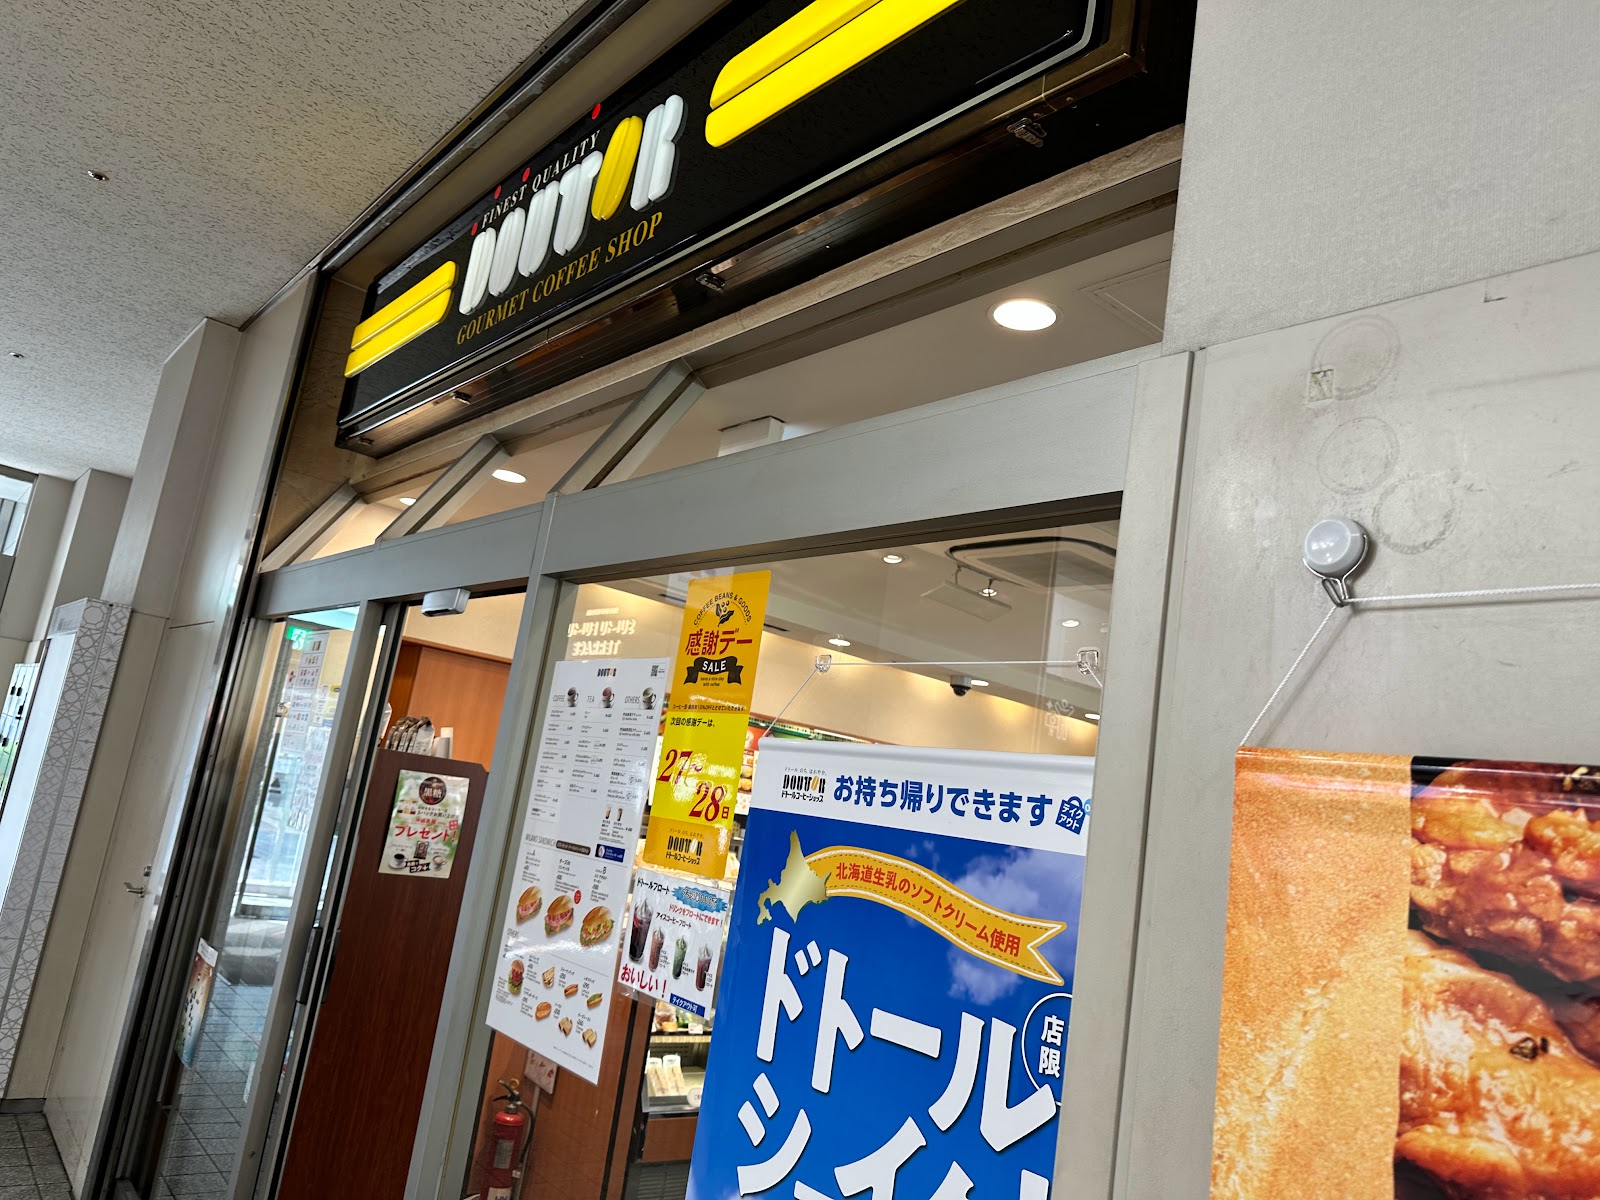 ドトールコーヒーショップ 錦糸町北口店のイメージ